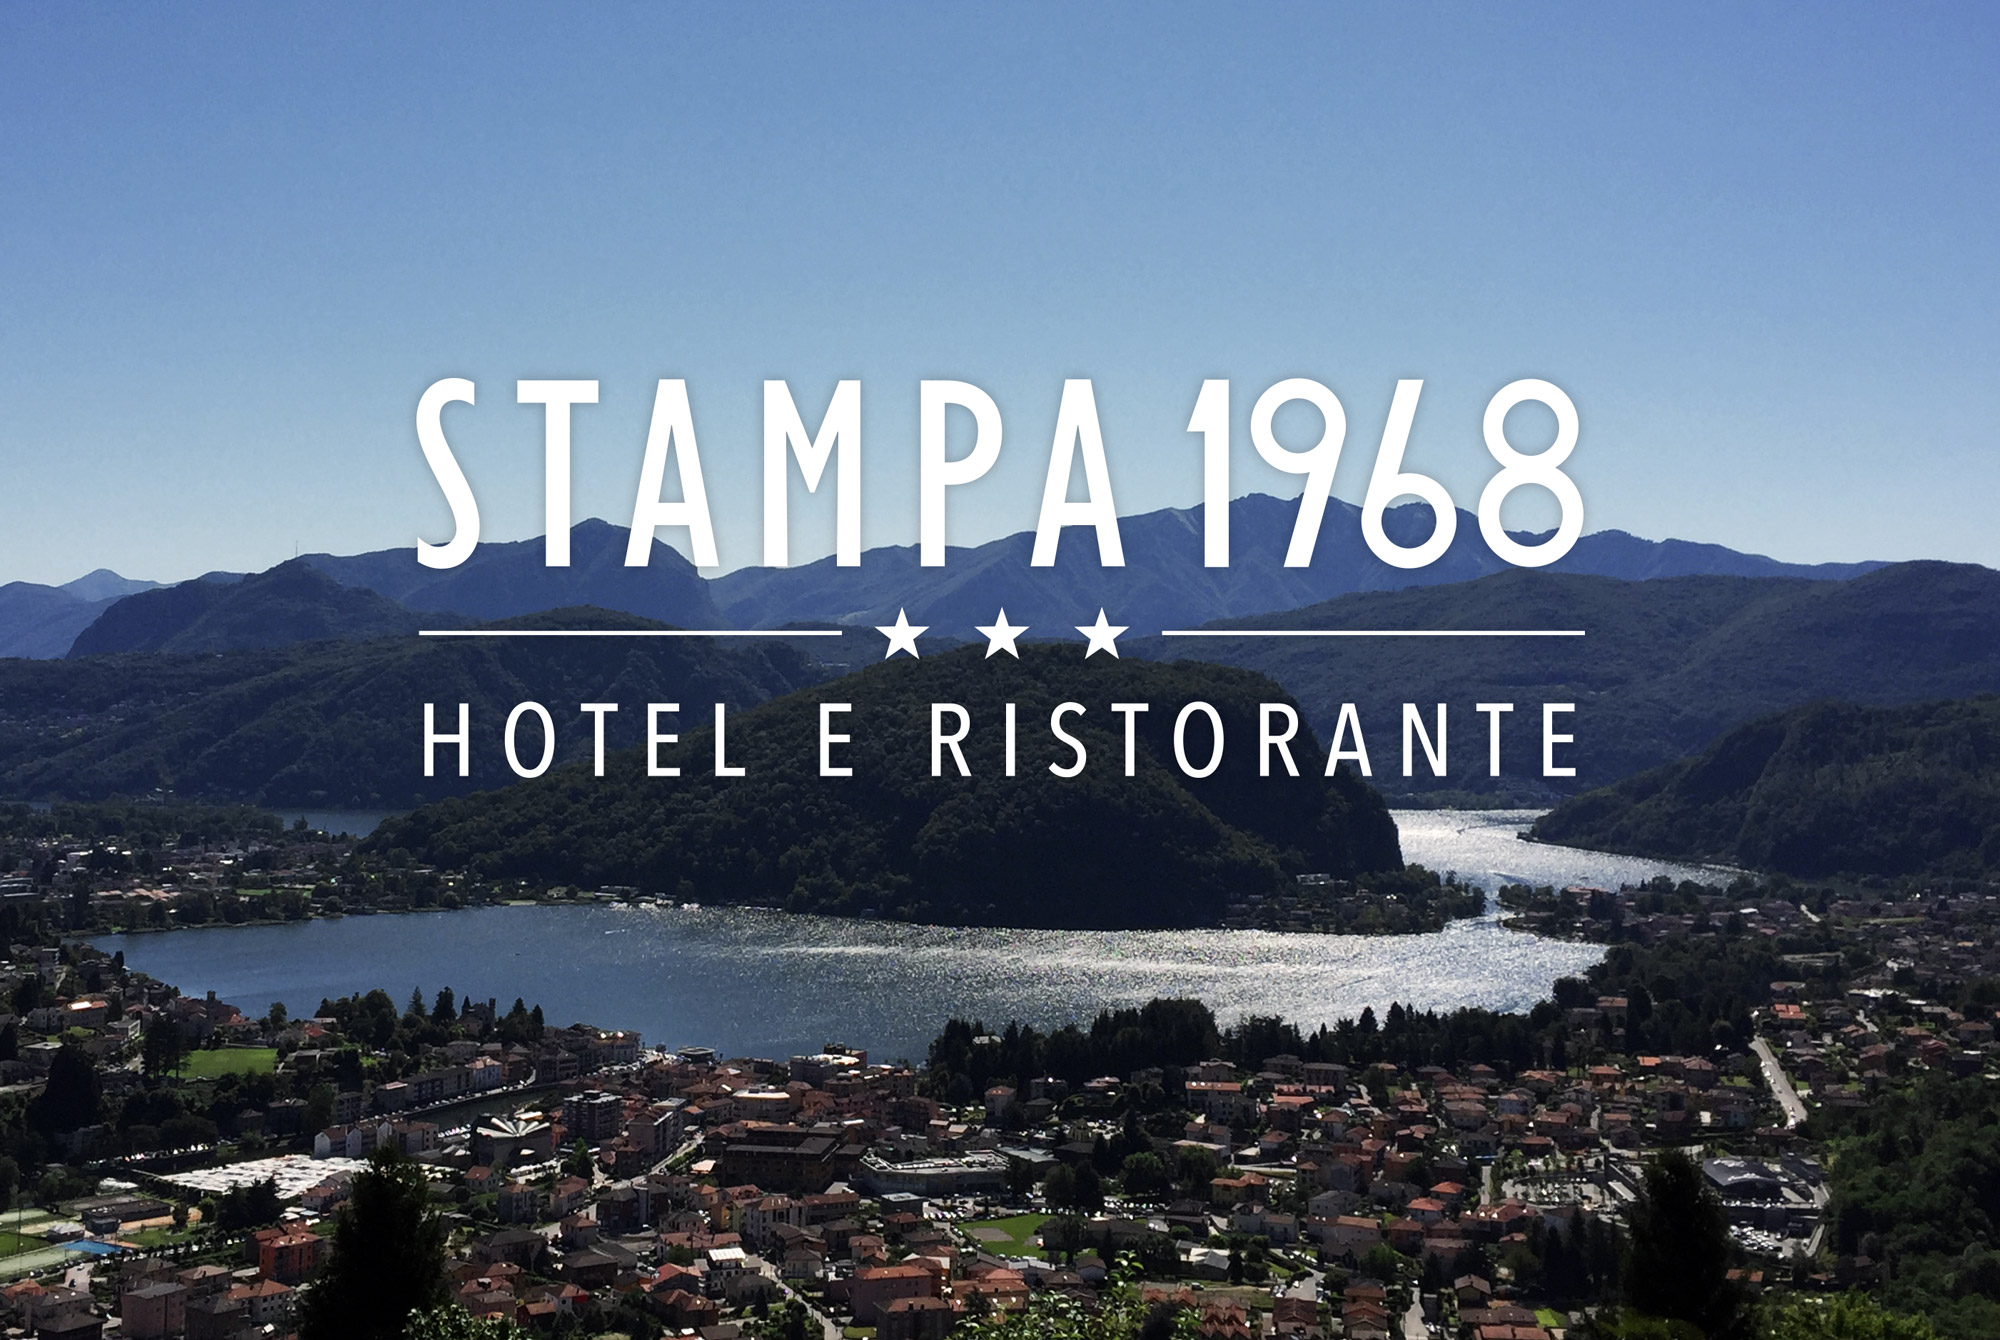 Hotel Ristorante Stampa 1968 - MAMBO adv